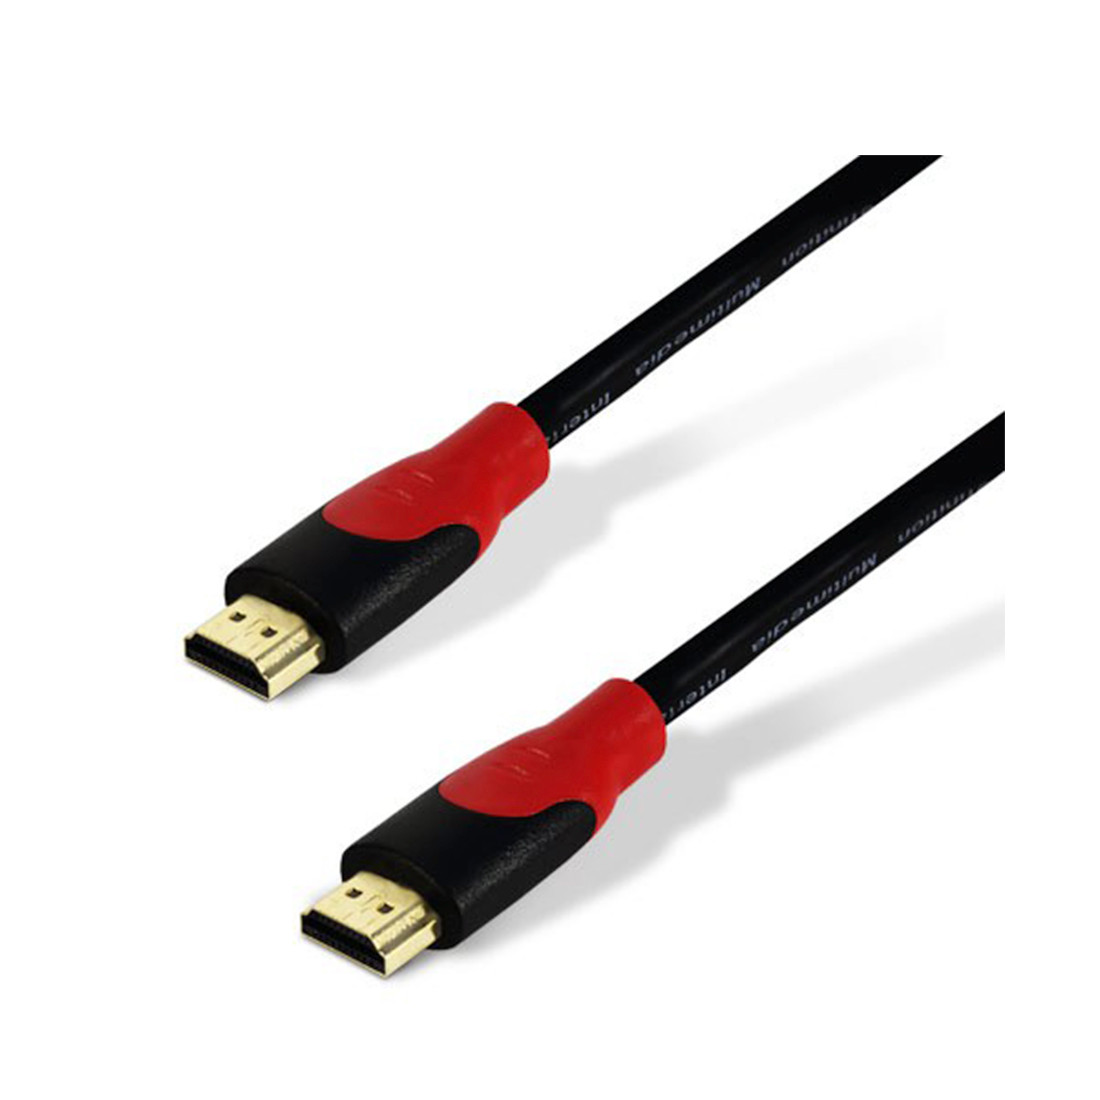 Интерфейсный кабель HDMI-HDMI, 1.5 метра, 30В, в блистерной упаковке, SH6016-1.5B, SHIP